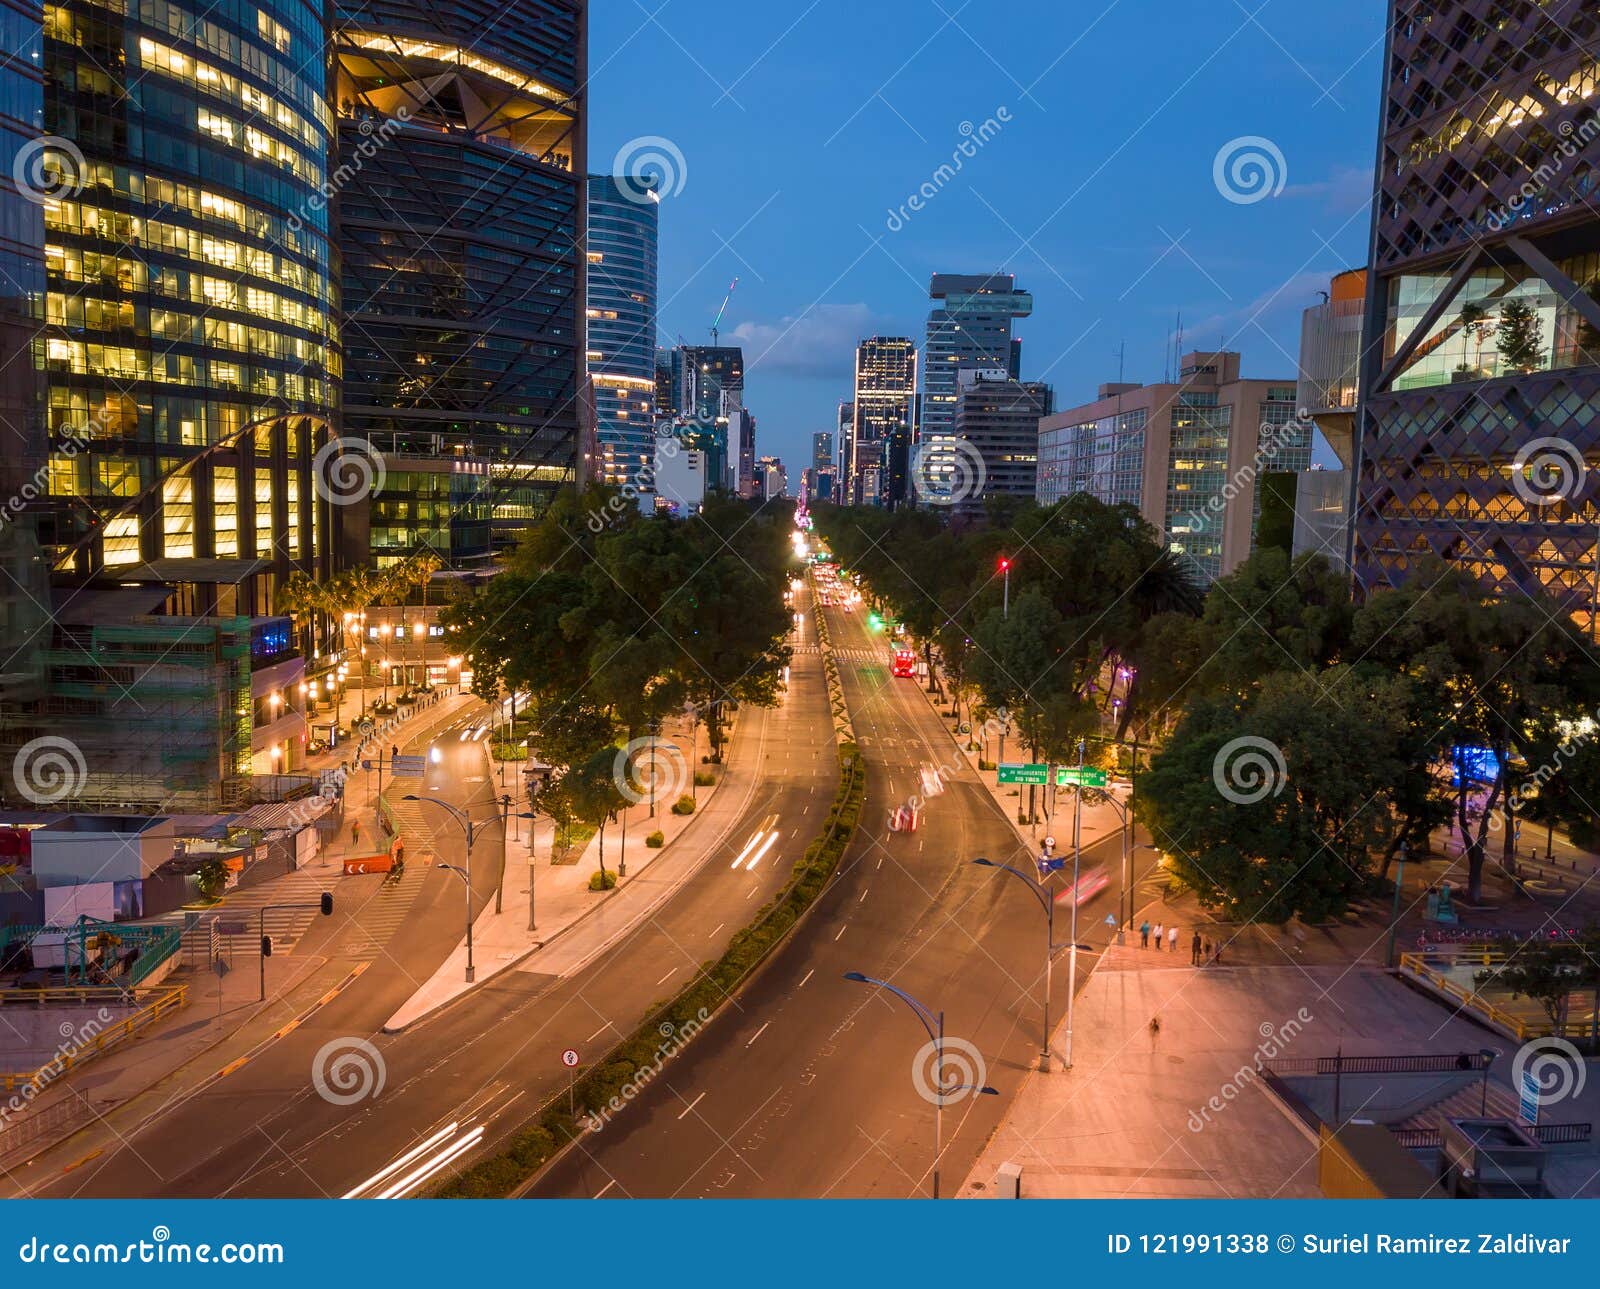 ciudad de mexico - reforma avenue night scene